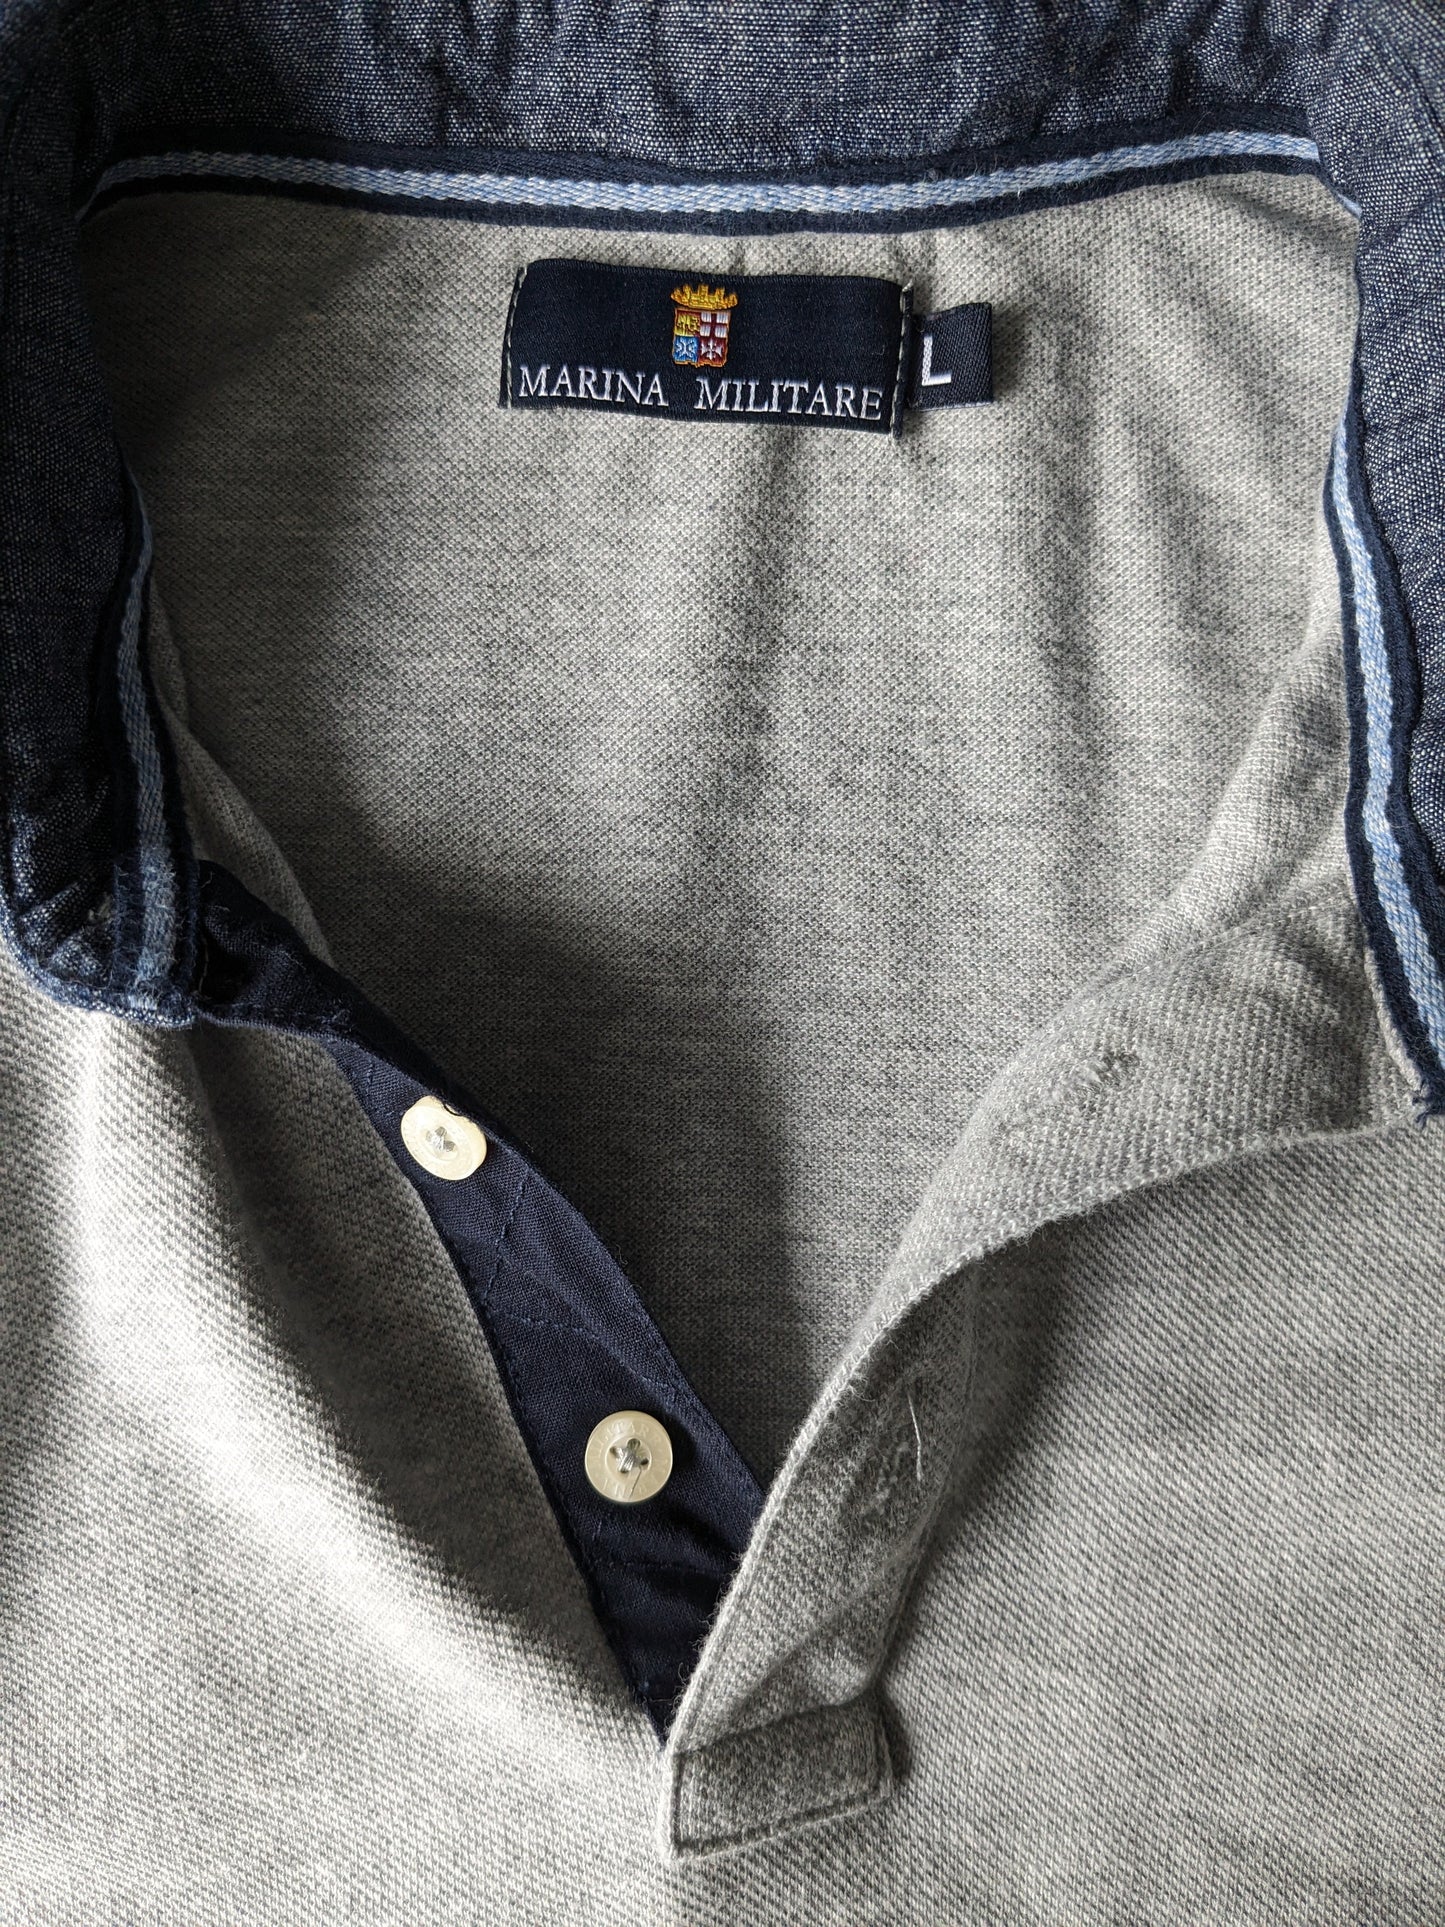 Marina Military Polo Sweater. Gray mixed. Size L.